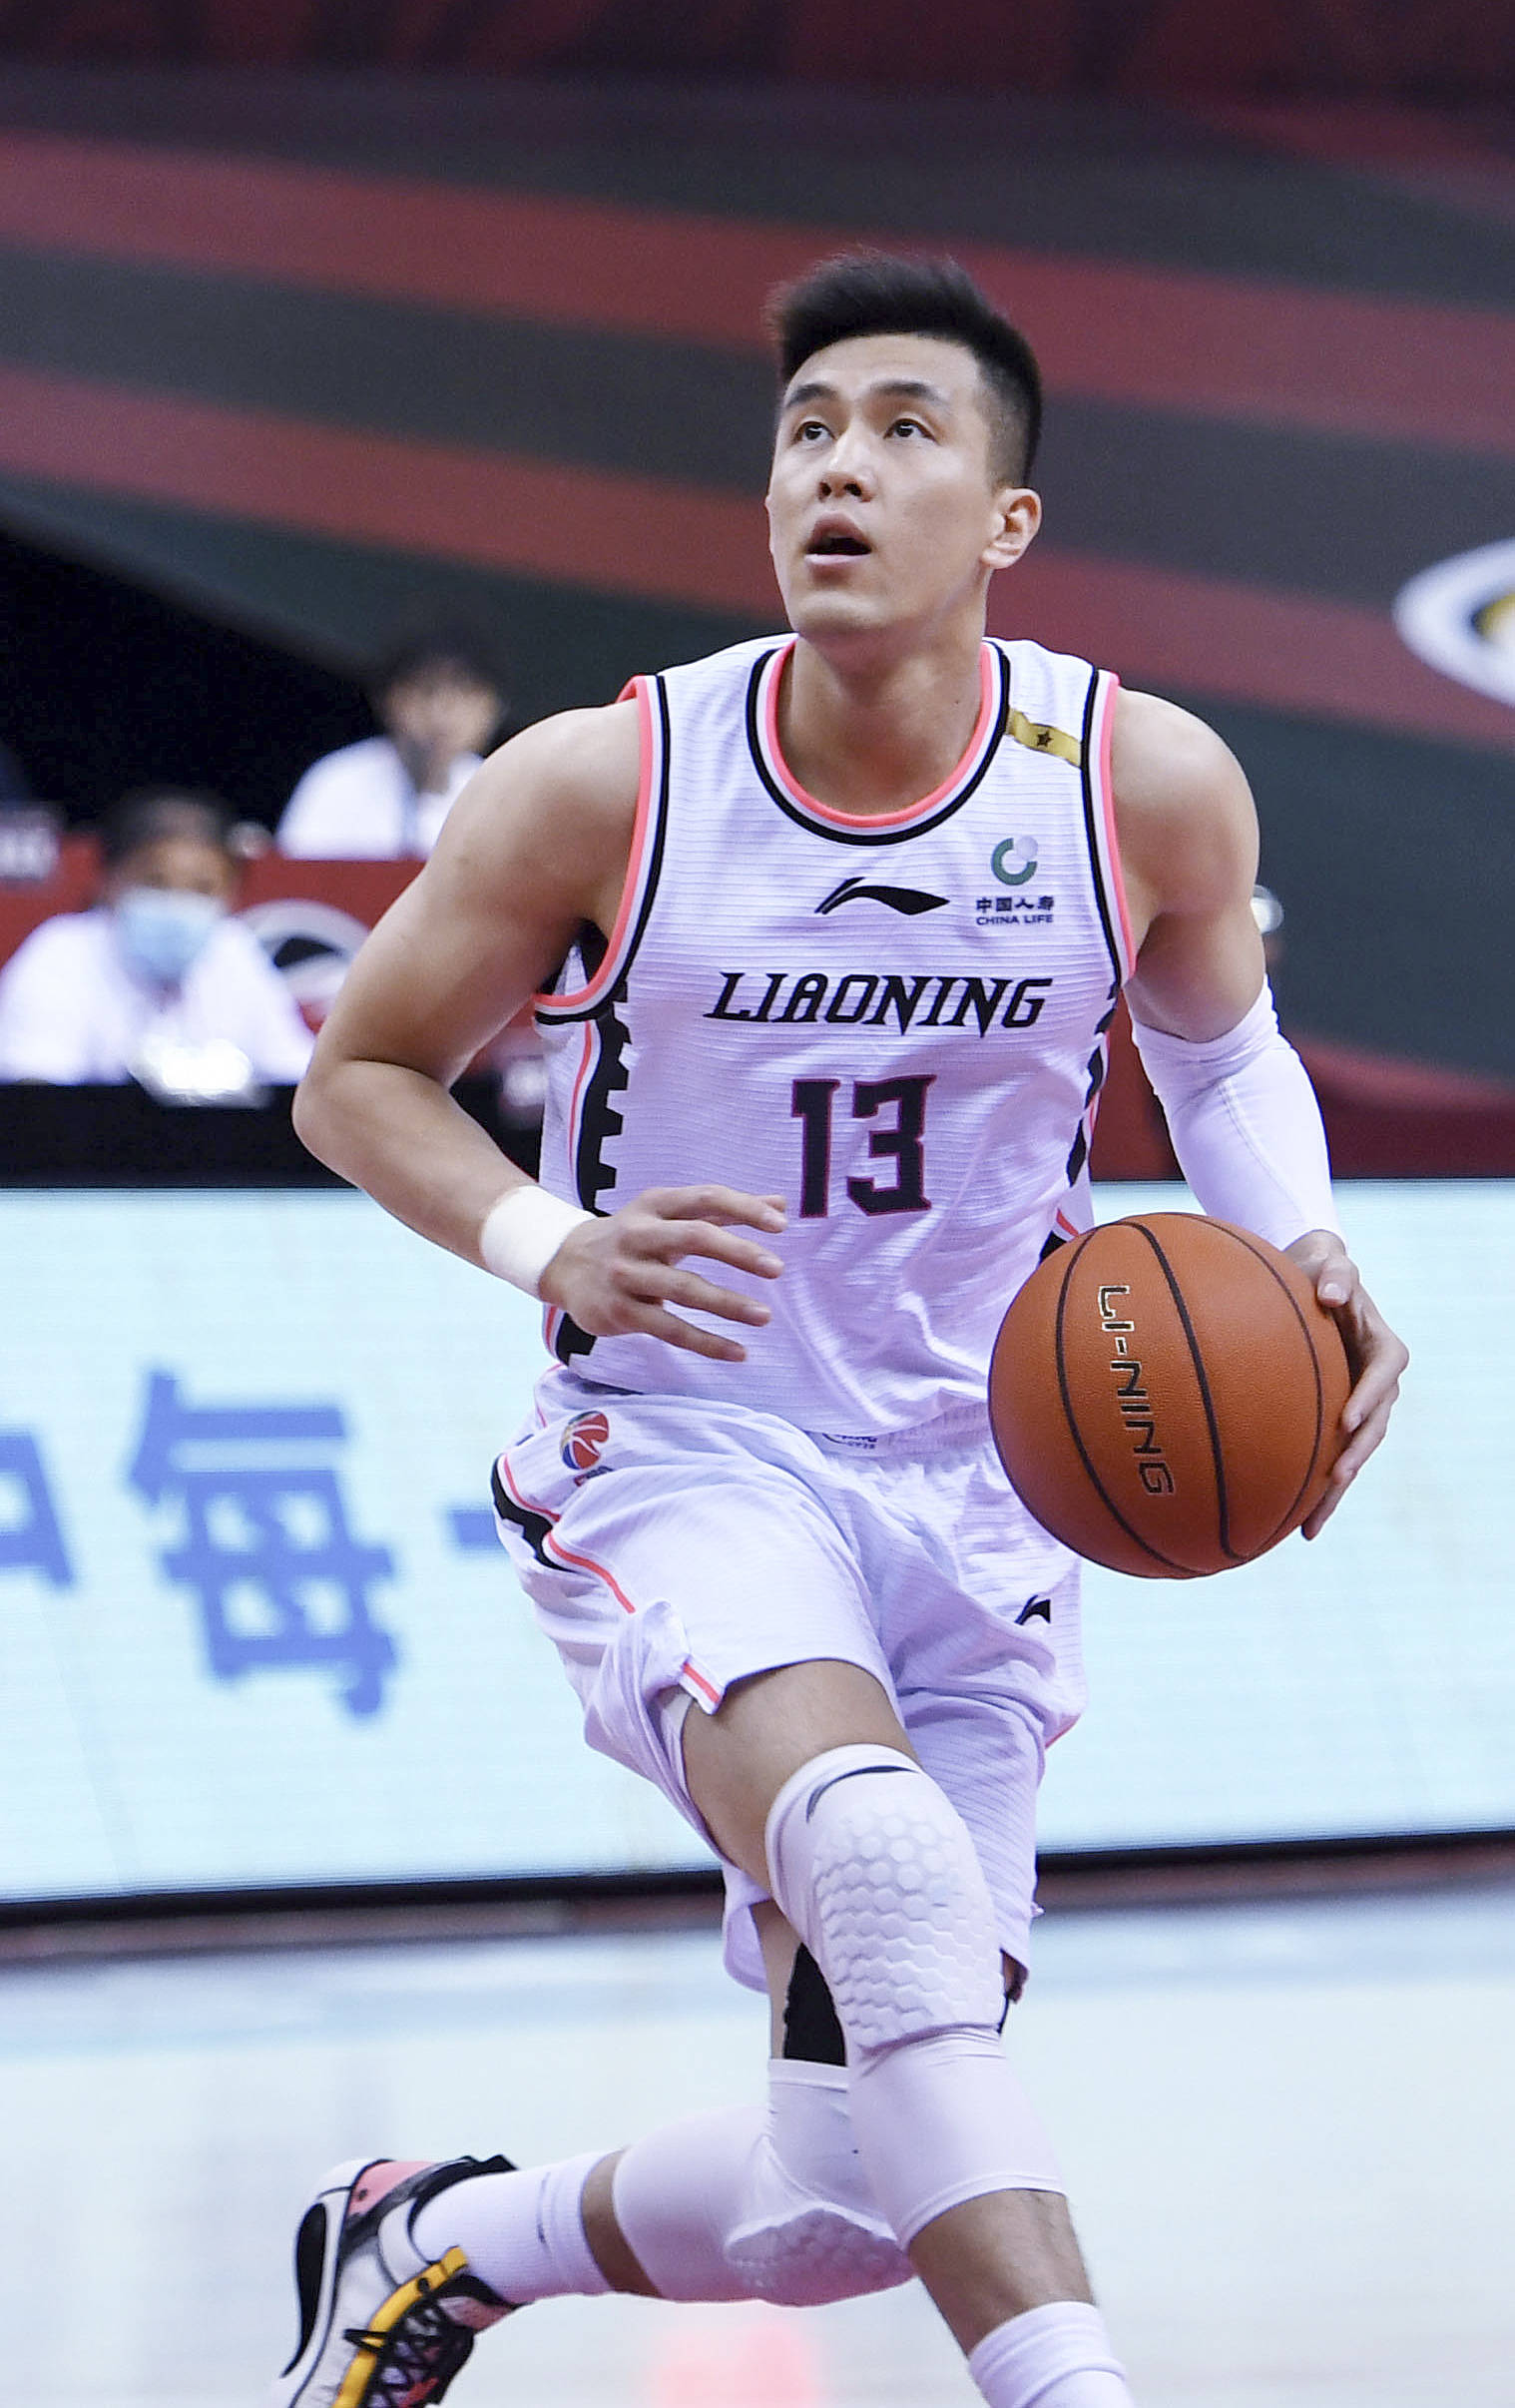 6月23日,辽宁本钢队球员郭艾伦(右)在比赛中伺机投篮.